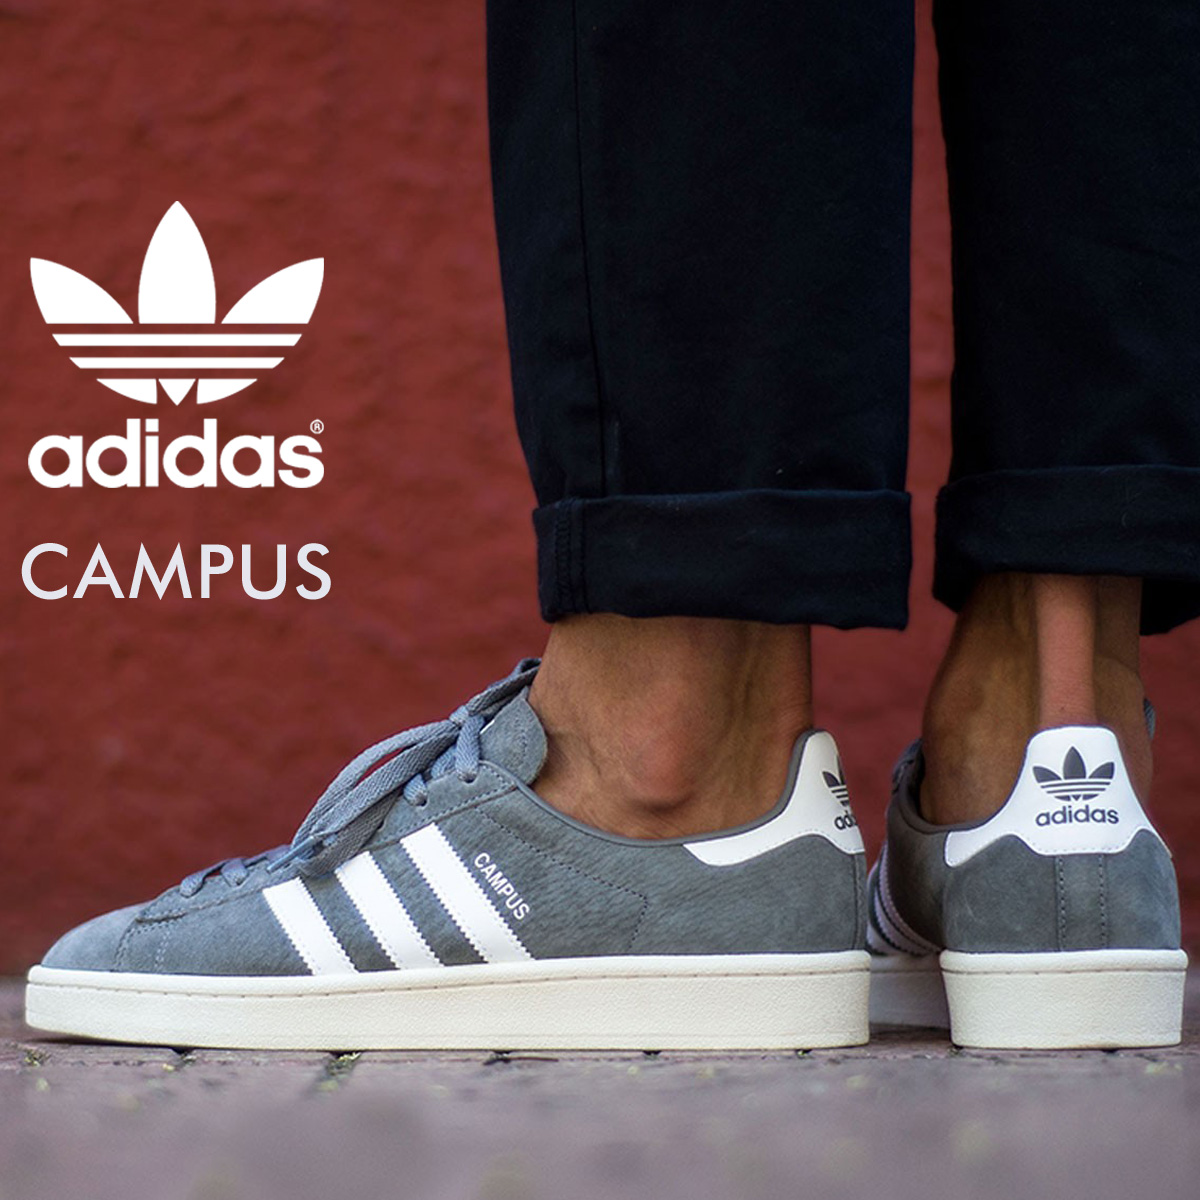 adidas campus shoes grey mens